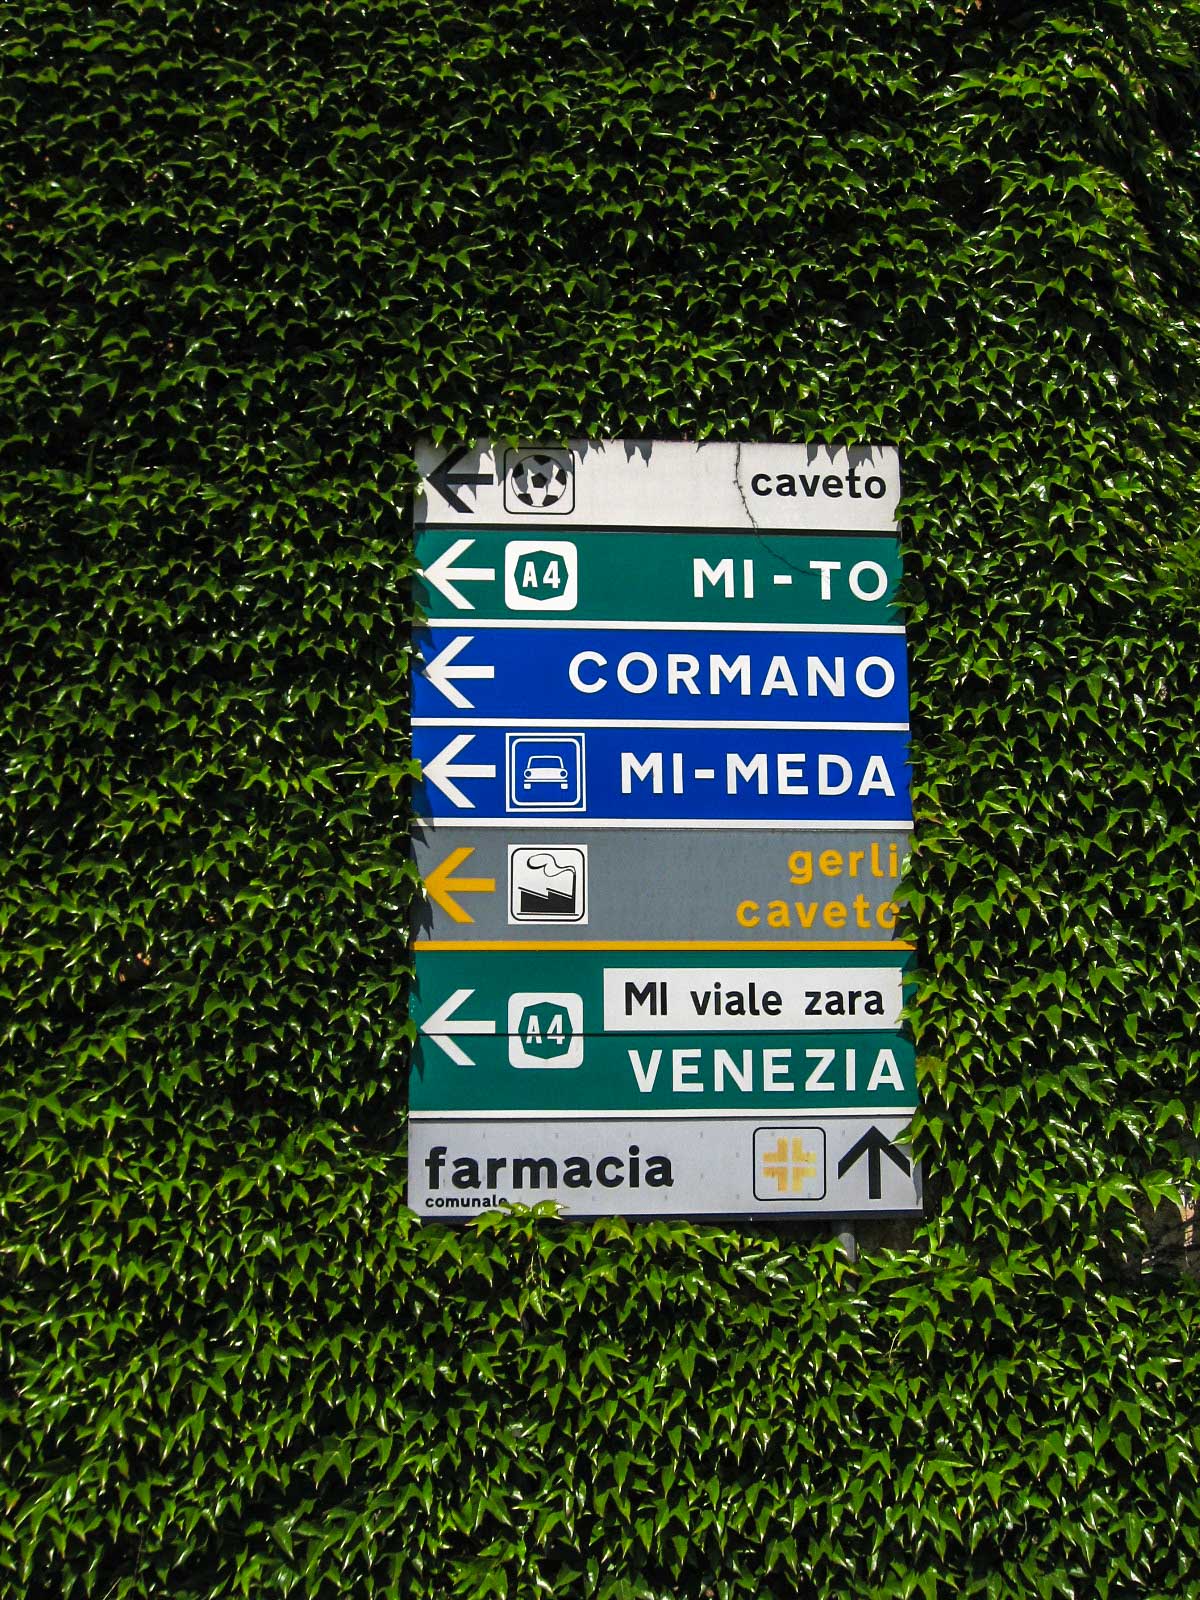 Una mostra che racconta il territorio dell'area metropolitana milanese